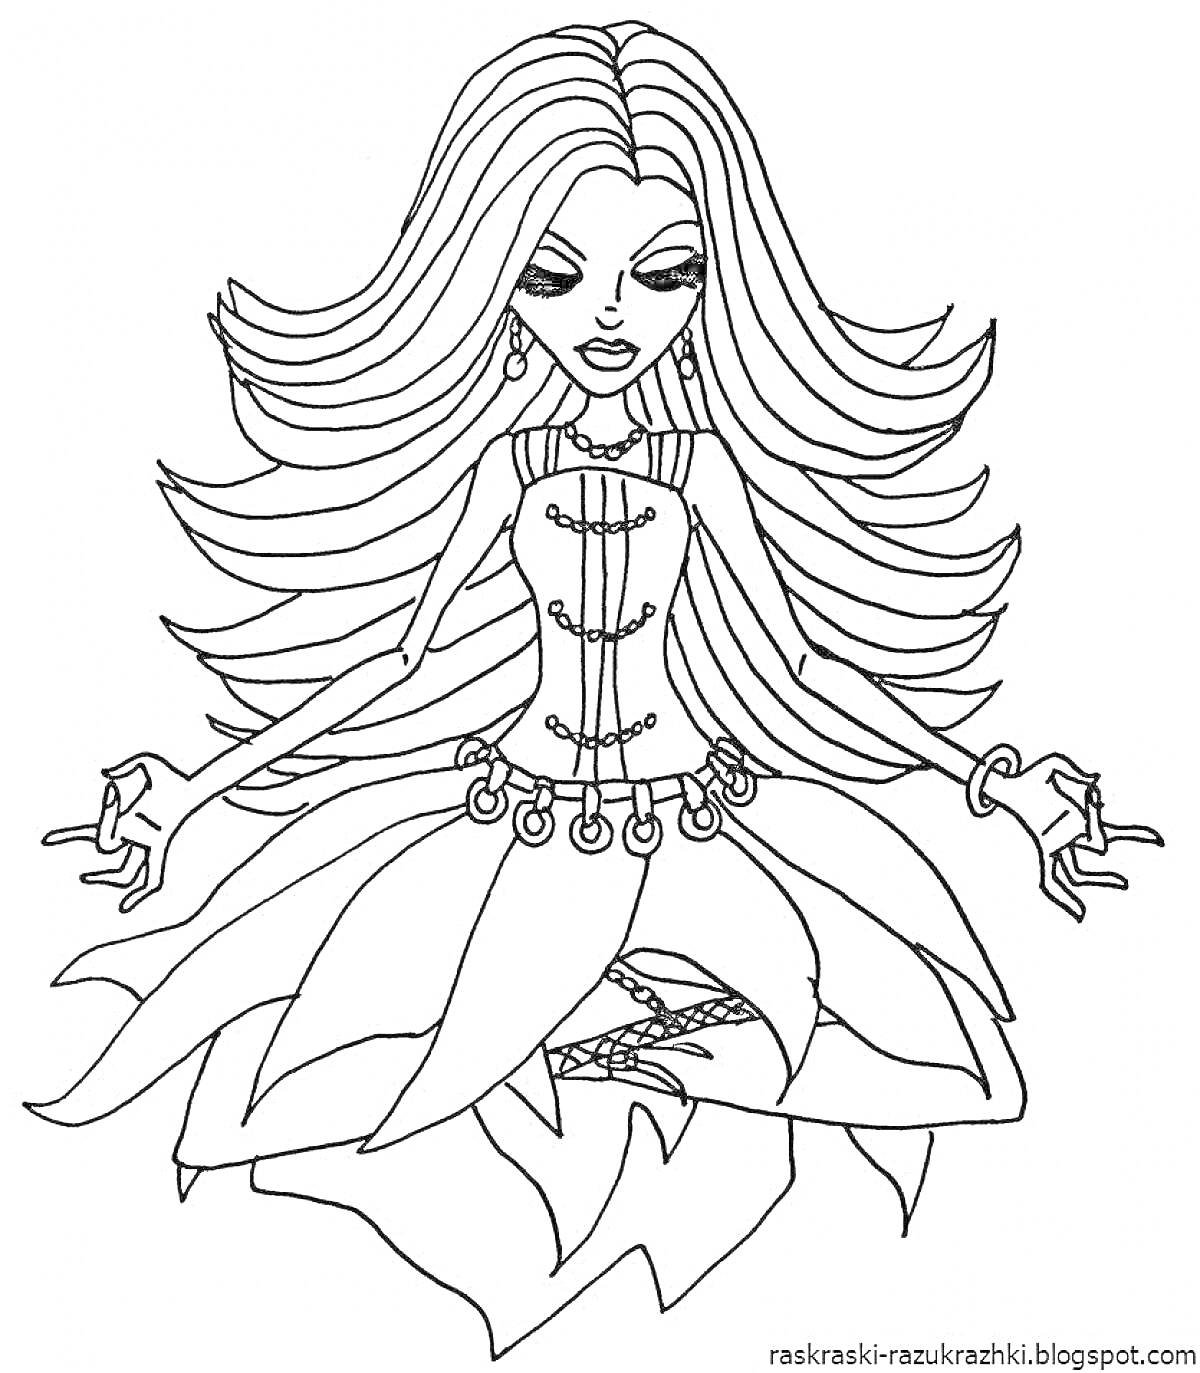 Раскраска Девушка из Монстер Хай в восточном платье, длинные распущенные волосы, сидит в позе медитации с руками в мудре